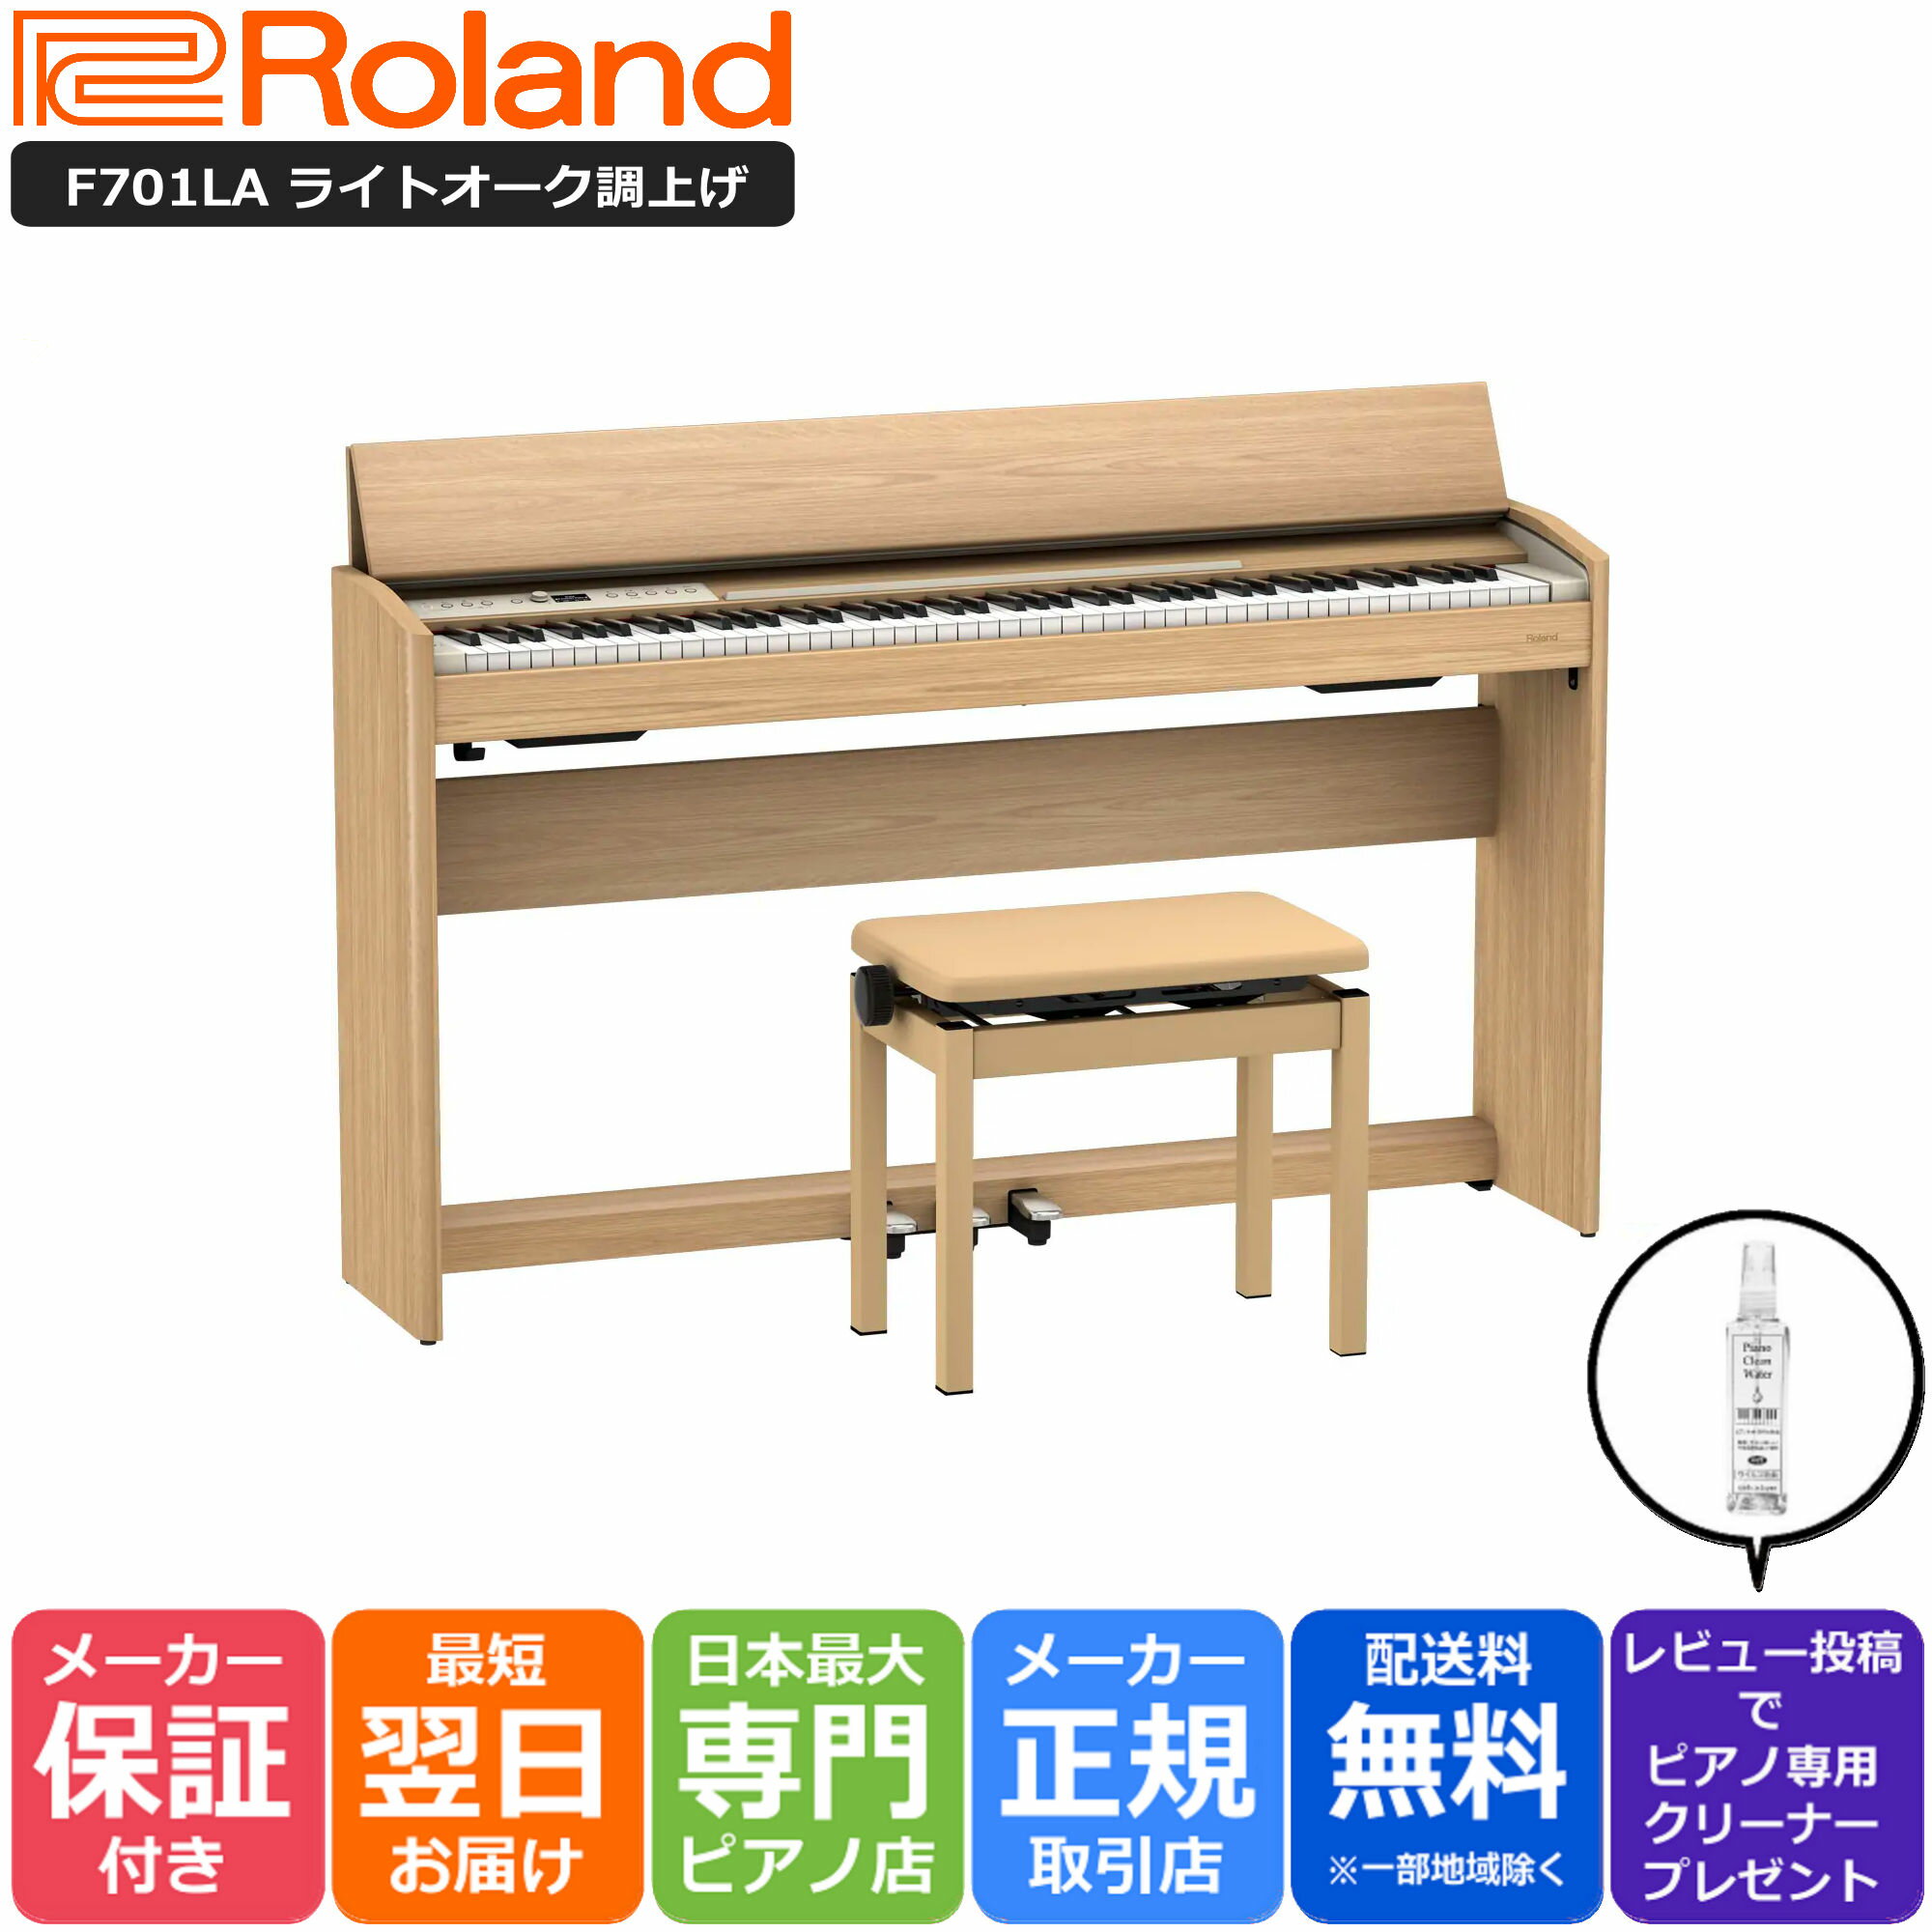 【あす楽対応】【13時までのご注文で即日発送】ローランド Roland F701 LA 電子ピアノ ライトオーク調仕上げ【組立設…